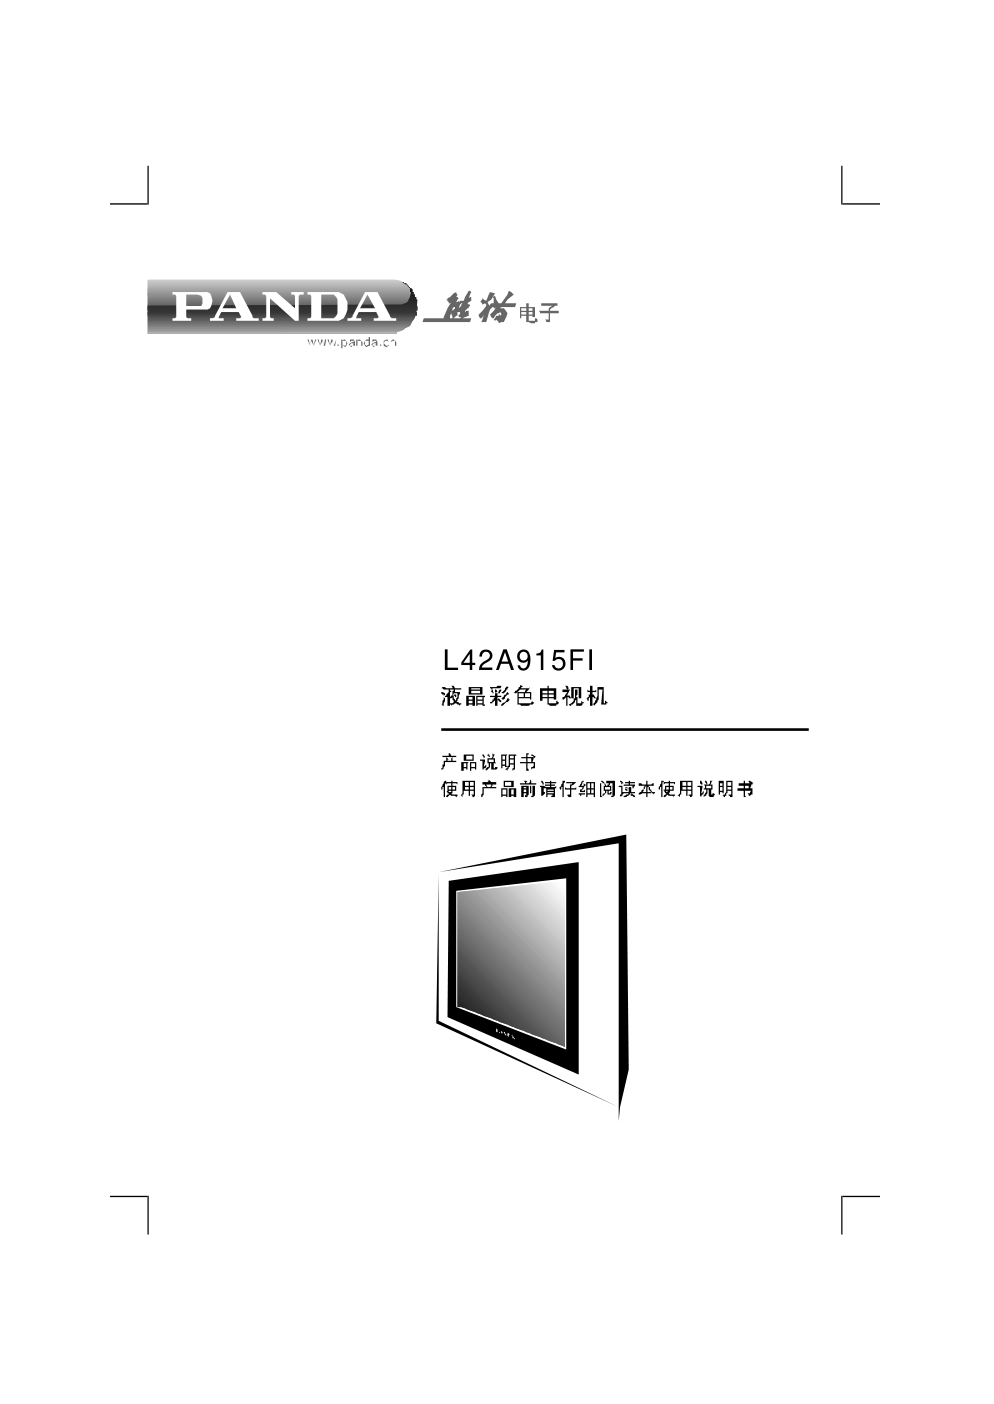 熊猫电子L42A915FI液晶彩色电视机说明书-0